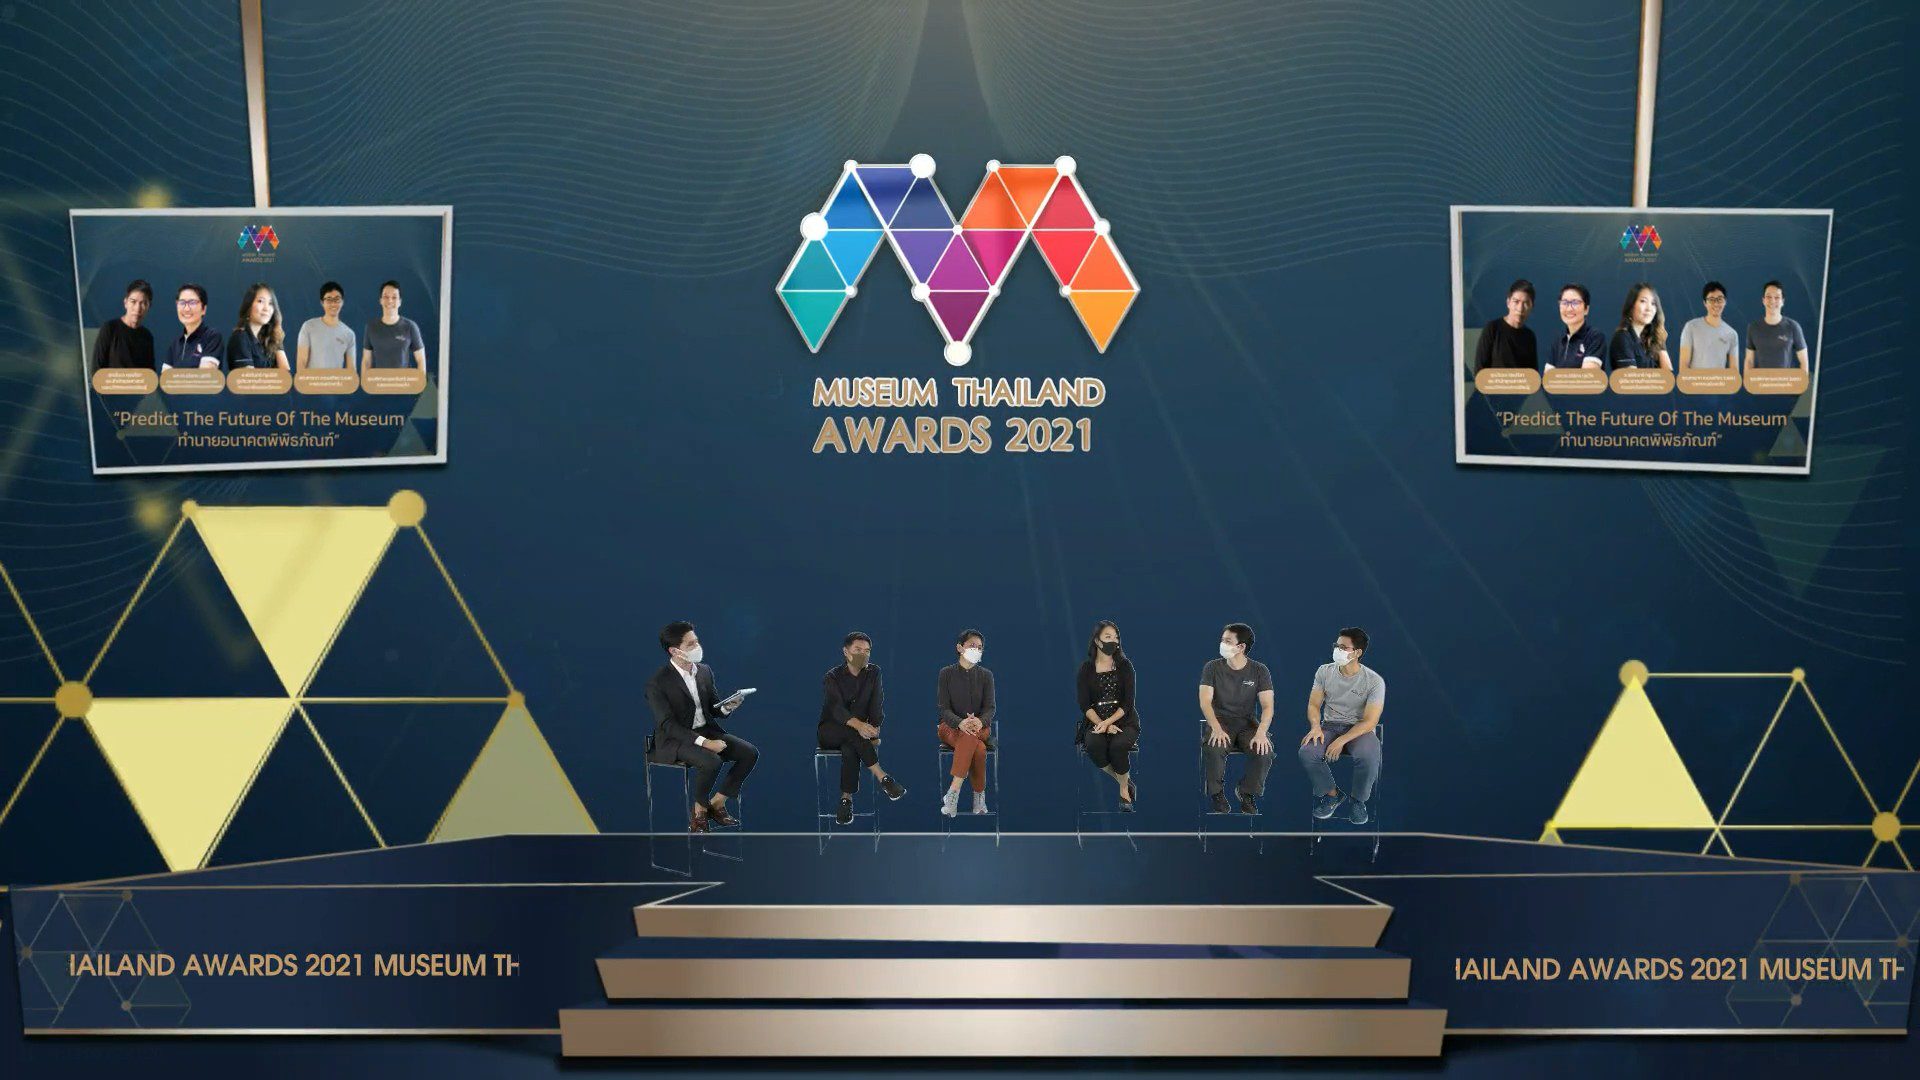 มิวเซียมสยามจัดงานประกาศรางวัลออนไลน์ Museum Thailand Awards 2021 ภายใต้แนวคิด เปลี่ยนร่าง เปลี่ยนรู้ เปลี่ยนชีวิต